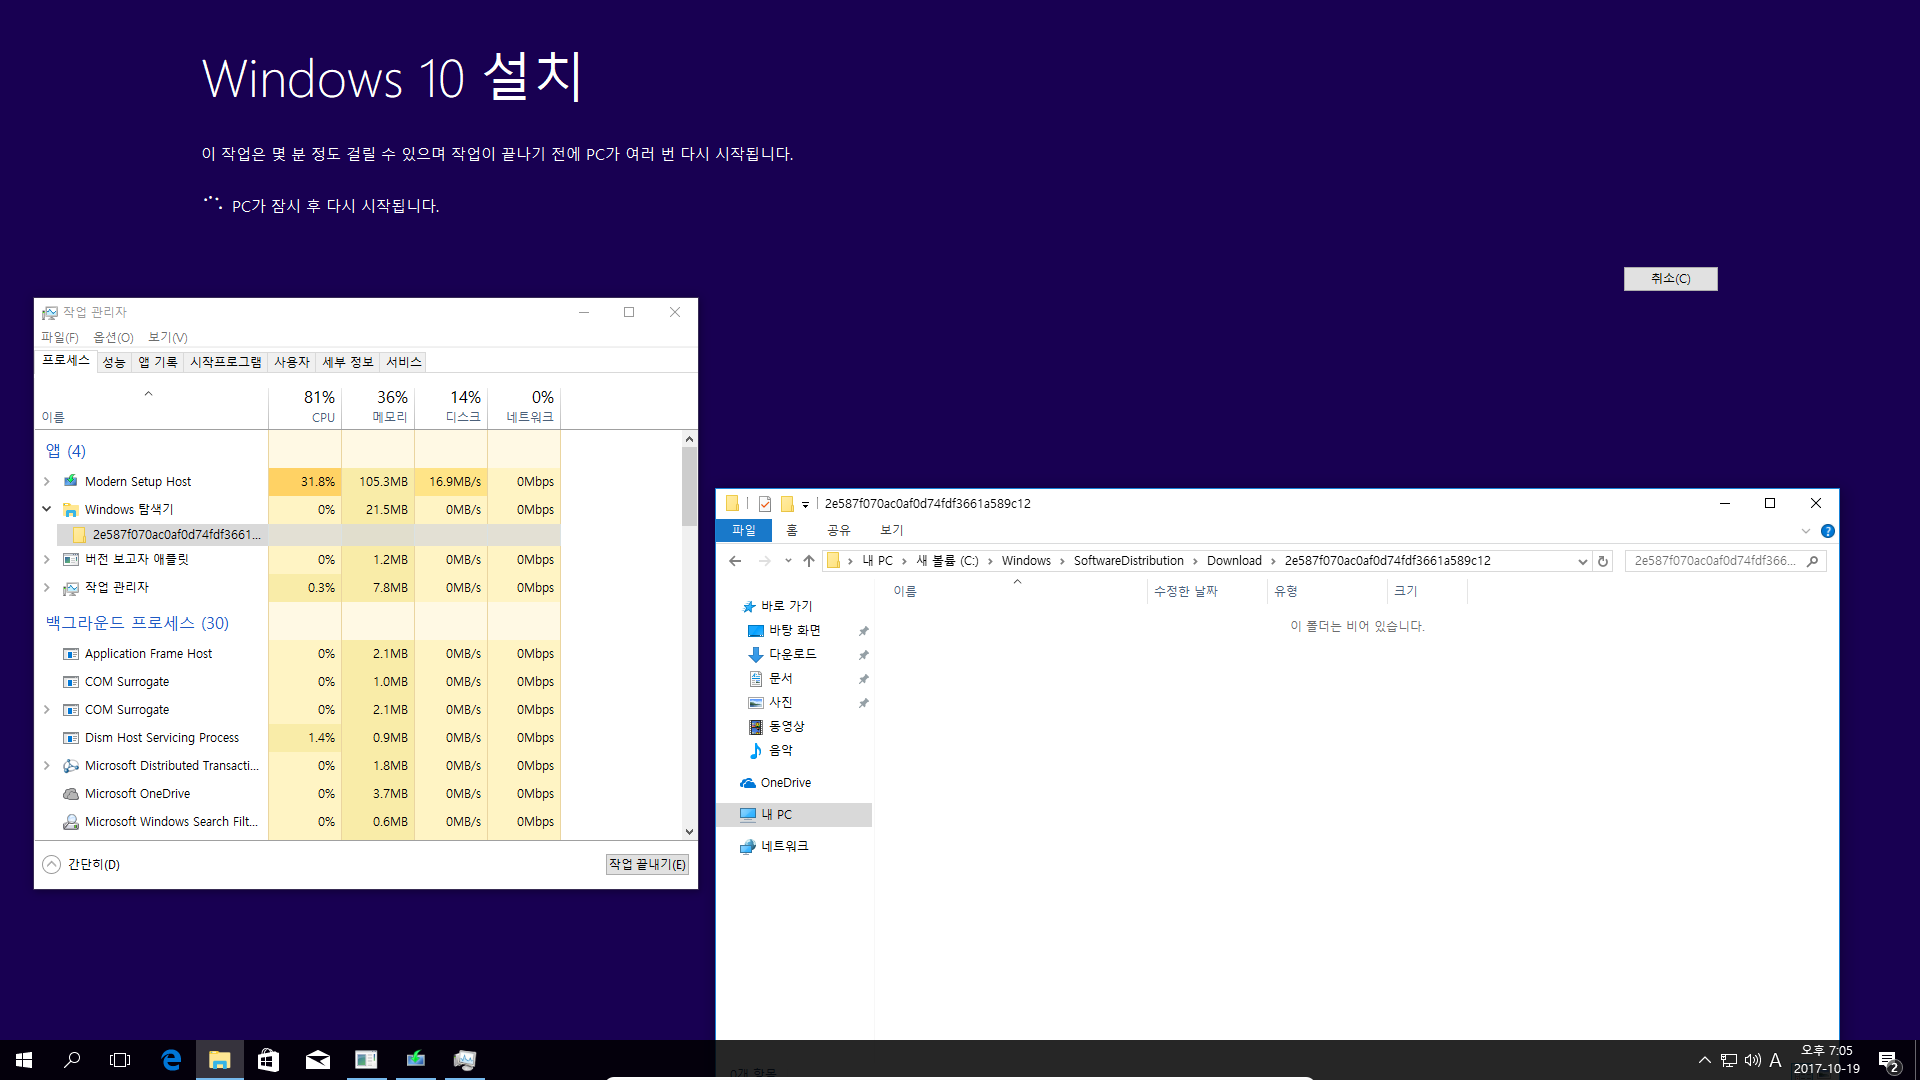 Windows 10 버전1709 엔터프라이즈로 업그레이드 테스트 - 버전1703 에서 - ISO 더블클릭 또는 엔터로 탑재 후에 setup.exe 실행으로 업그레이드-오잉 뭔가 다운로드 하네요 - 새 버전에 설치할 누적 업데이트 였군요 2017-10-19_190557.png